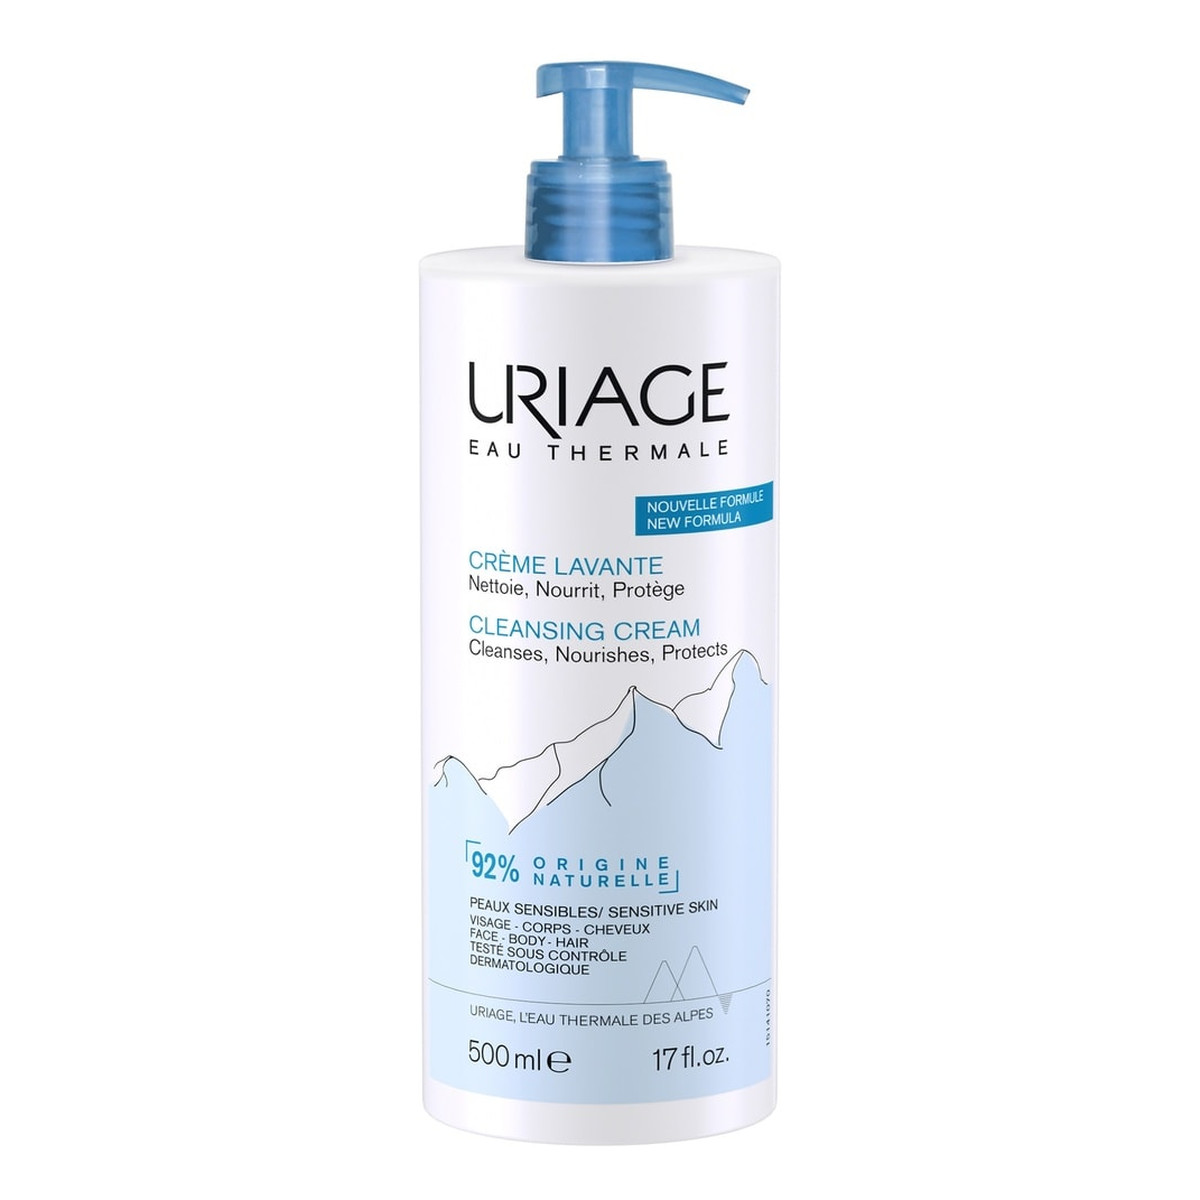 Uriage Eau Thermale Cleansing Cream kremowy żel oczyszczający 500ml